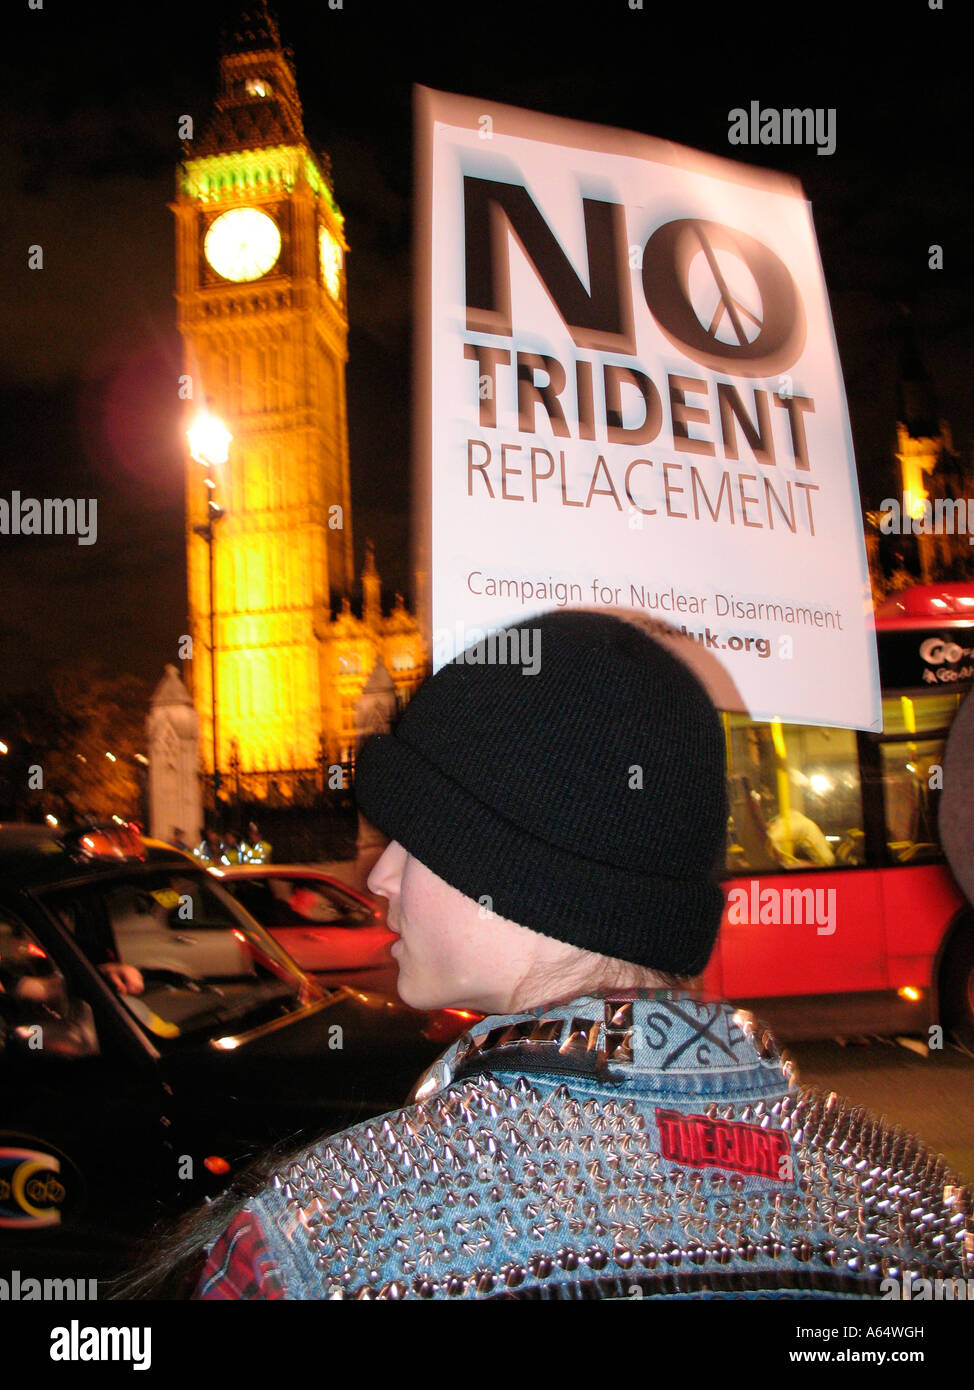 Pas de démonstration du remplacement du Trident, Parliament Square London England Banque D'Images